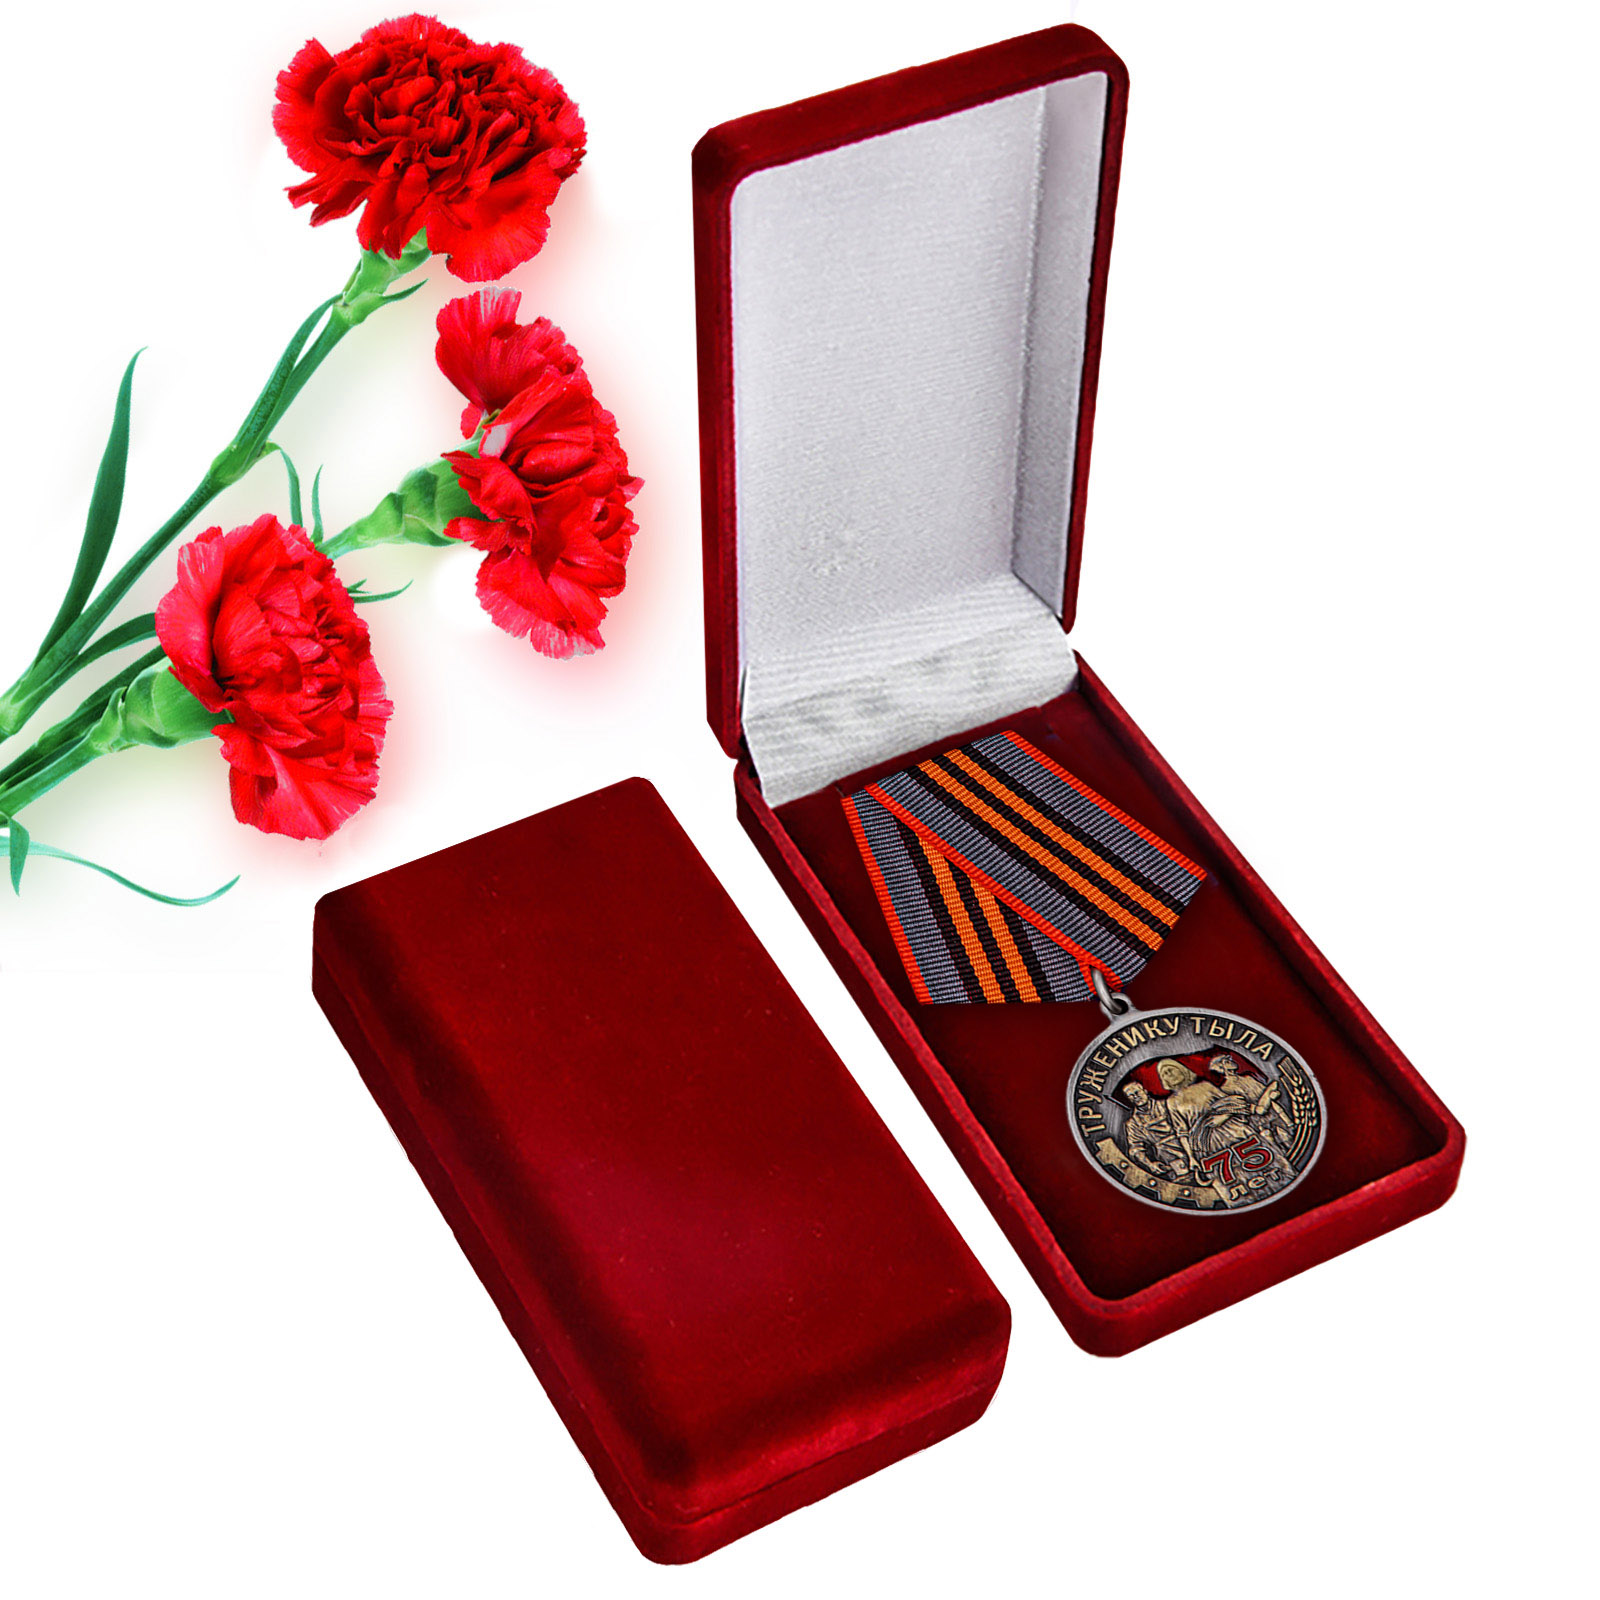 Купить общественную медаль Труженику тыла к 75-летию Победы в ВОВ оптом